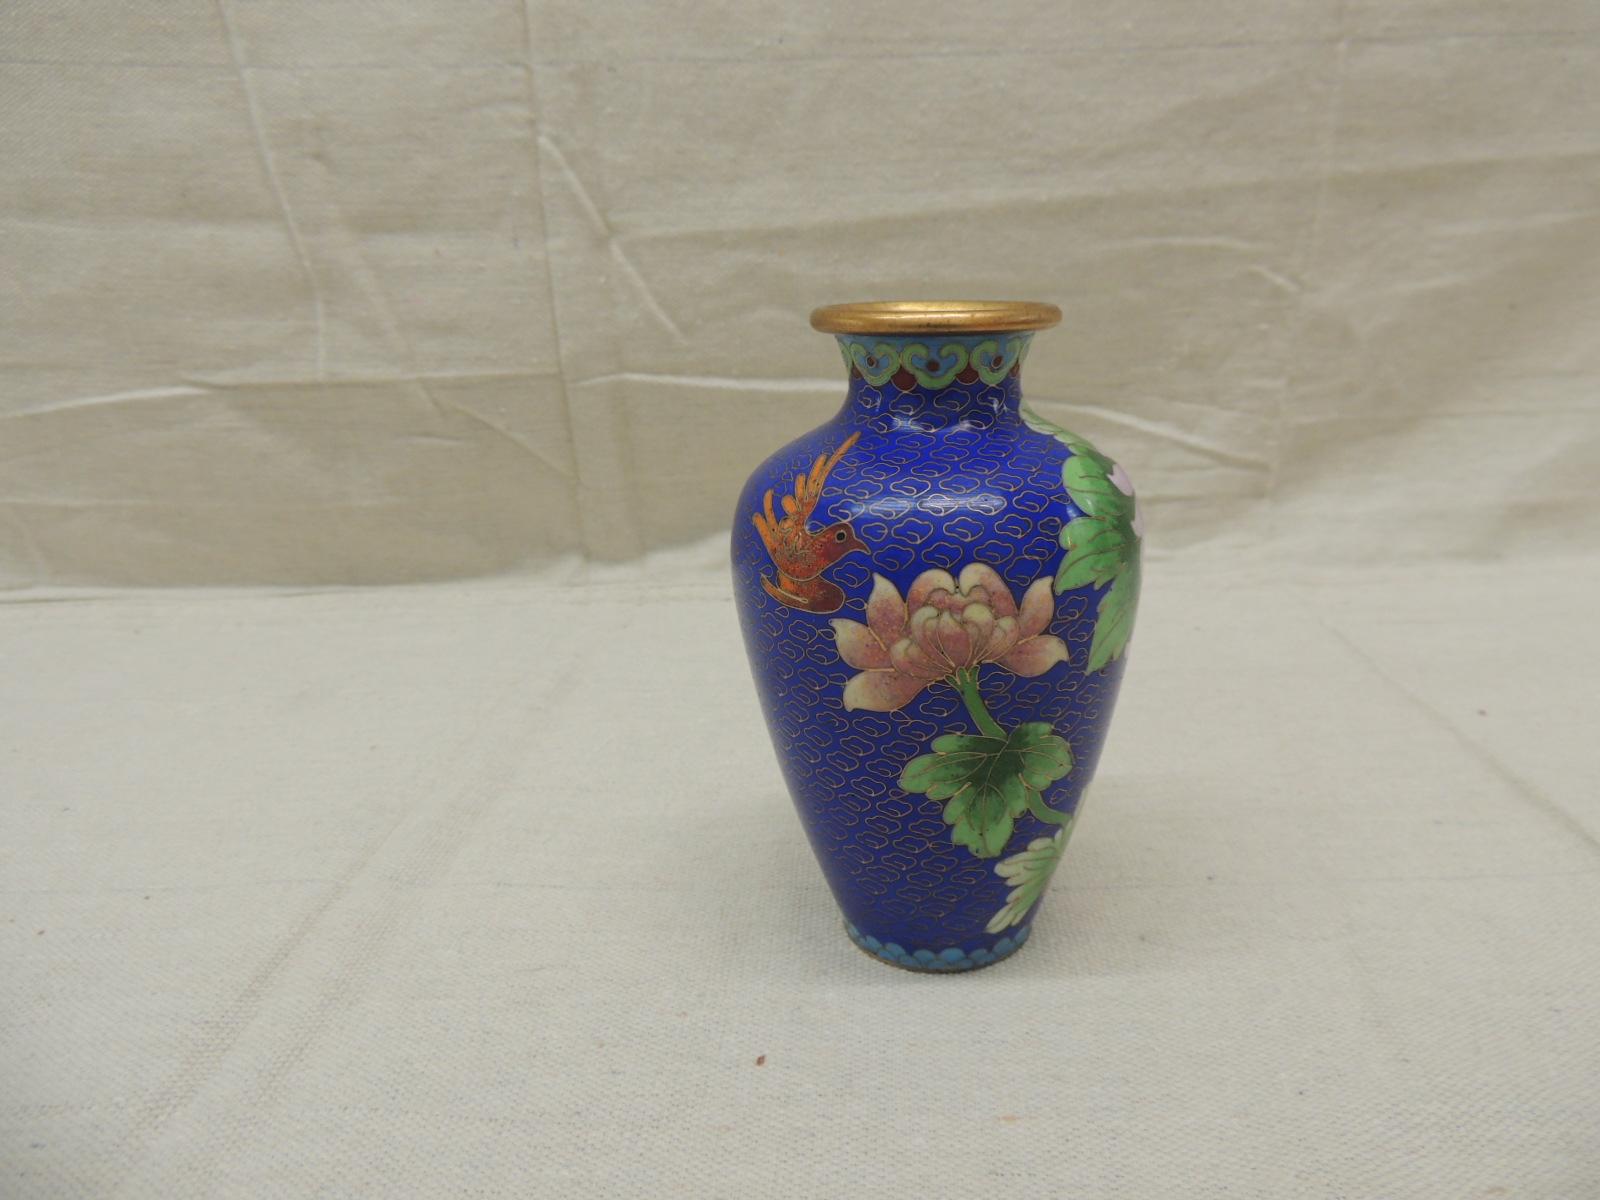 Vintage purple and blue cloisonné floral vase.
Size: 3.5